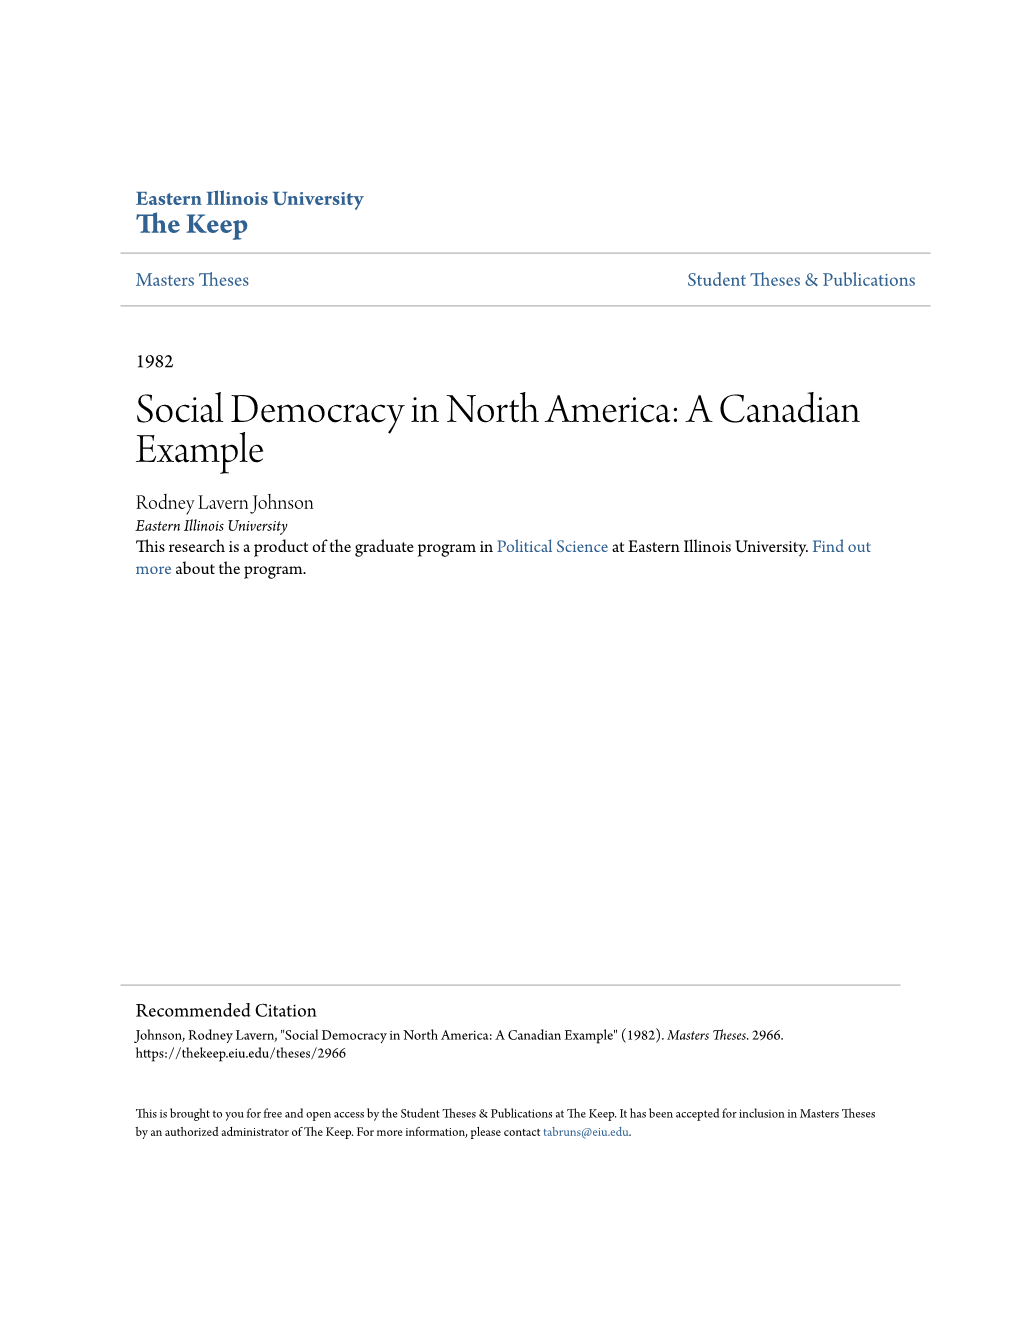 Social Democracy in North America